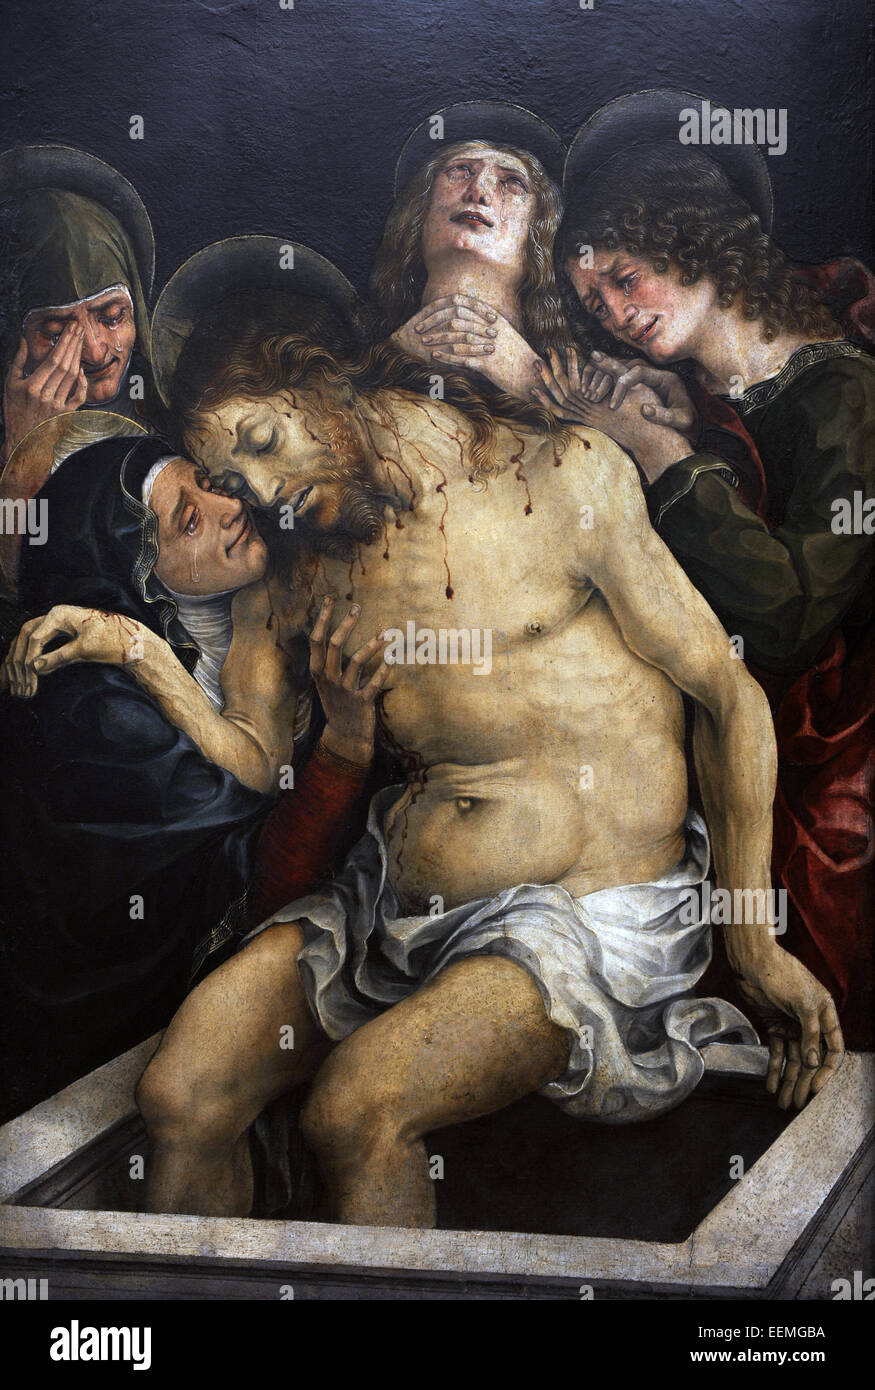 Liberale da Verona (1441-1526). Peintre italien. Renaissance. Déploration du Christ. L'Alte Pinakothek. Munich. L'Allemagne. Banque D'Images